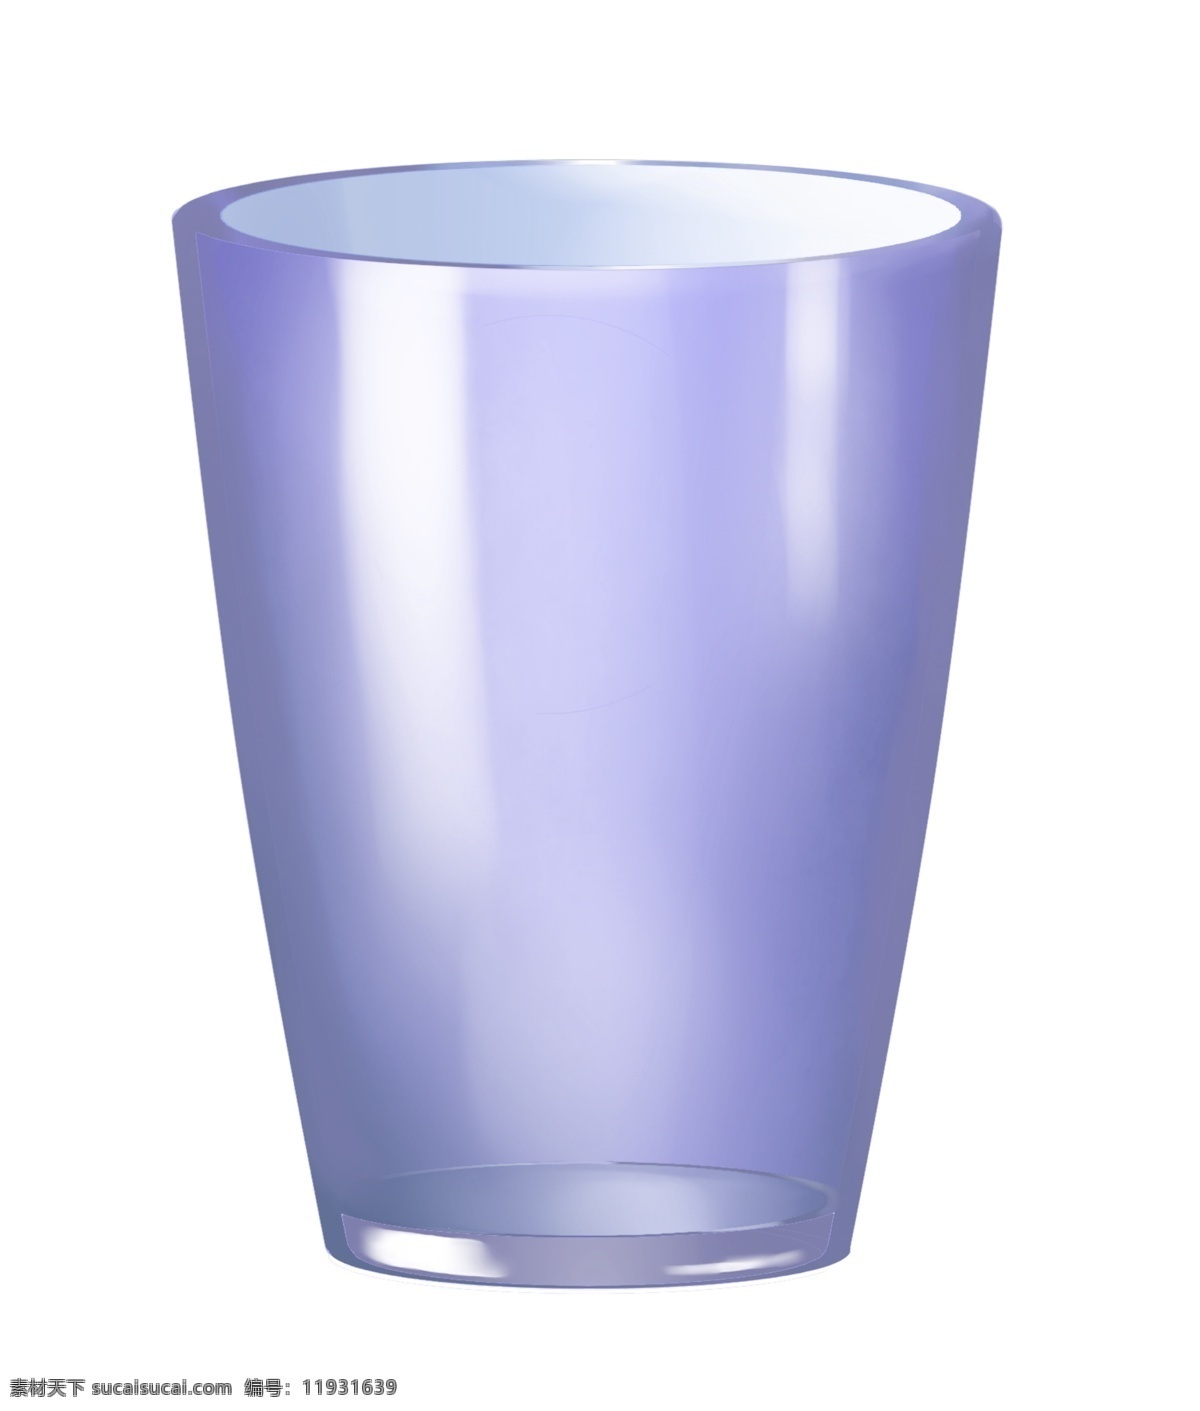 蓝色 玻璃 水杯 插画 玻璃水杯 玻璃杯 玻璃器皿 玻璃容器 漂亮的杯子 玻璃杯子 器皿